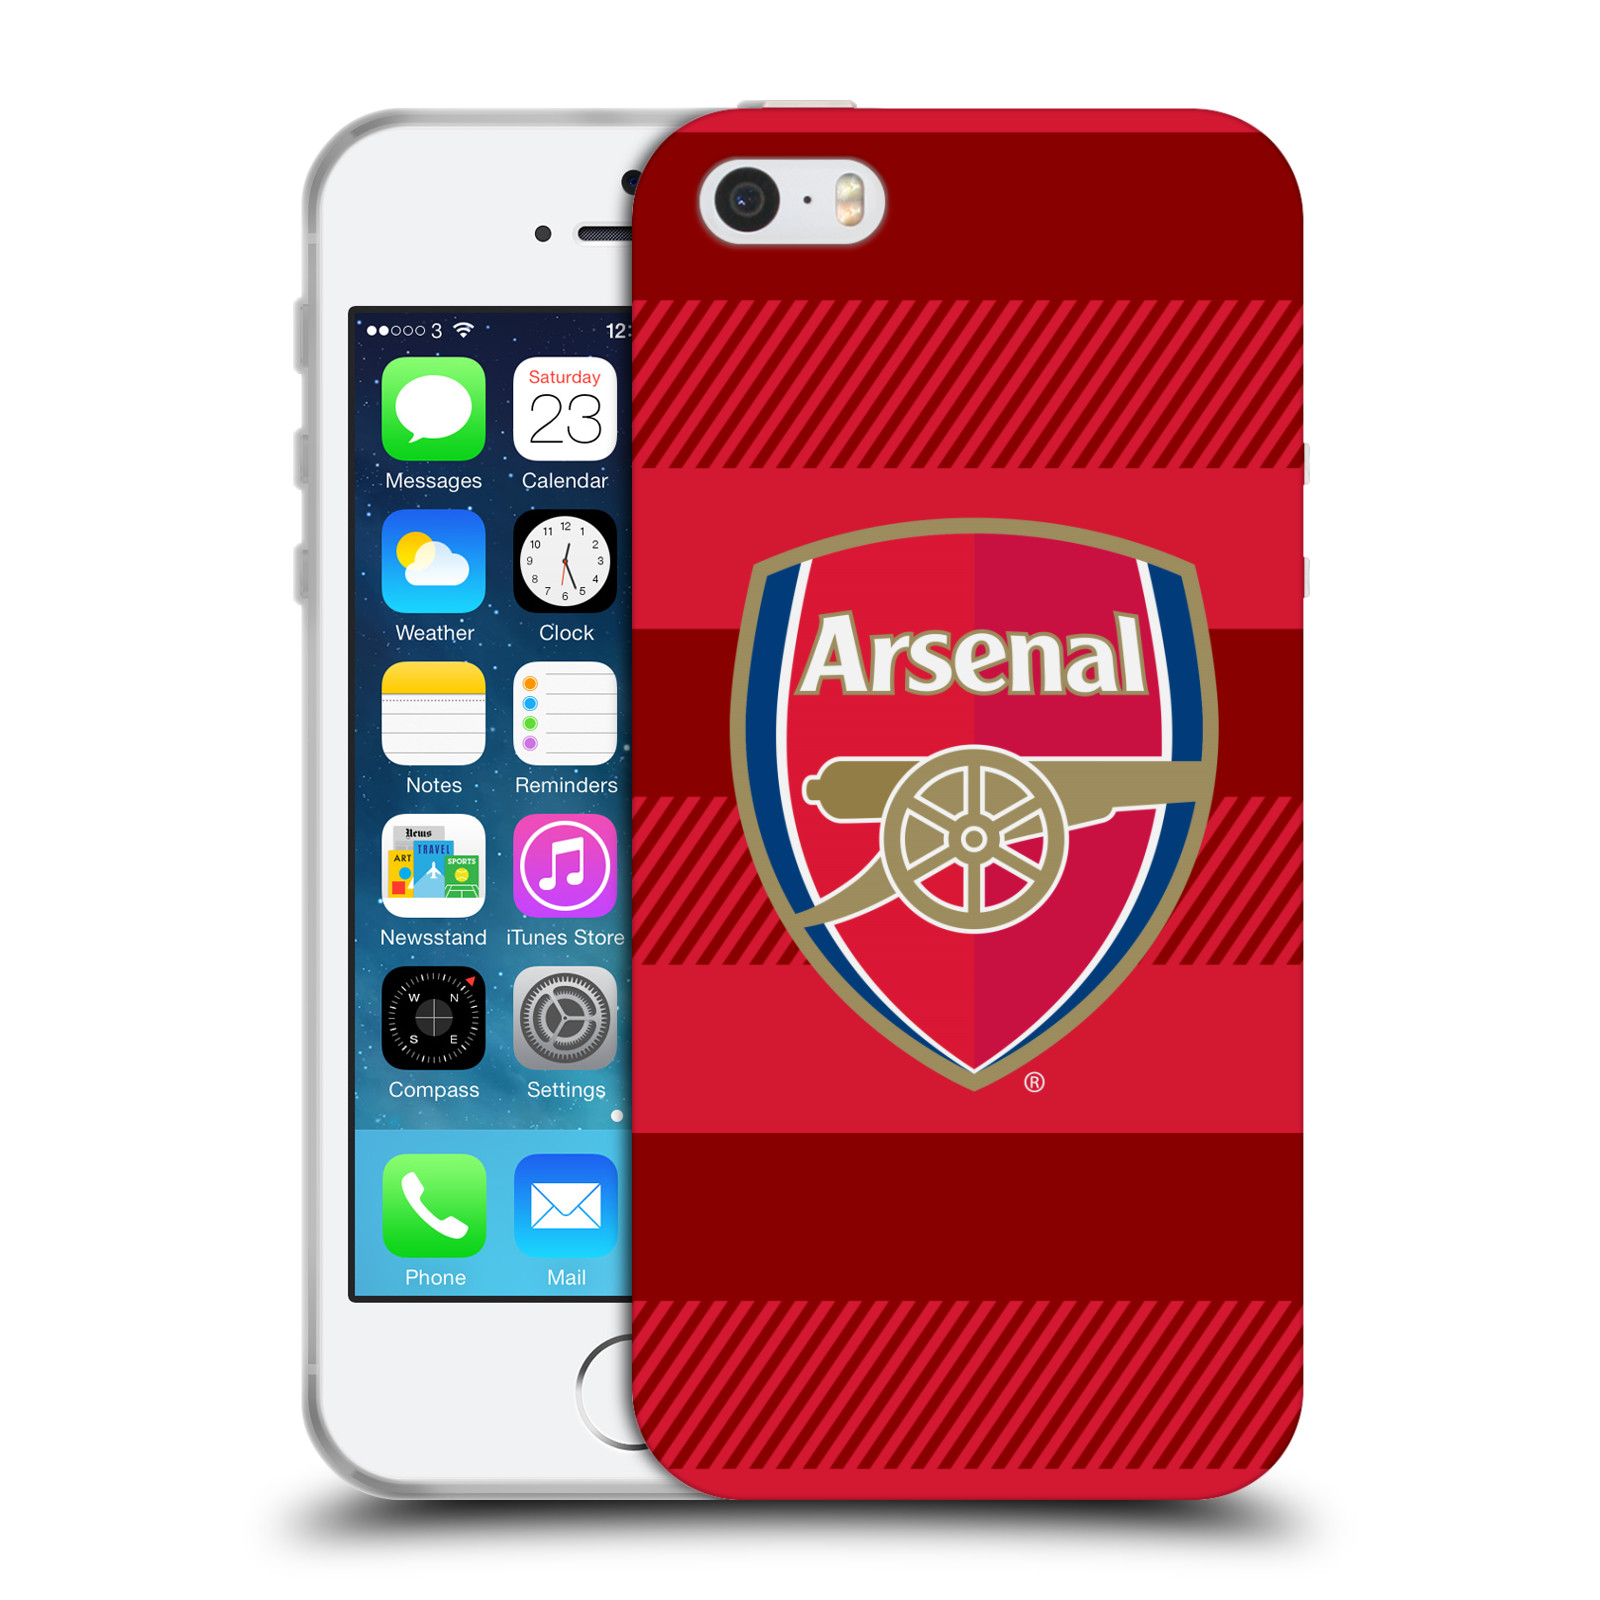 Silikonové pouzdro na mobil Apple iPhone 5, 5S, SE - Head Case - Arsenal FC - Logo s pruhy (Silikonový kryt, obal, pouzdro na mobilní telefon s motivem klubu Arsenal FC - Logo s pruhy pro Apple iPhone SE, 5S a 5)